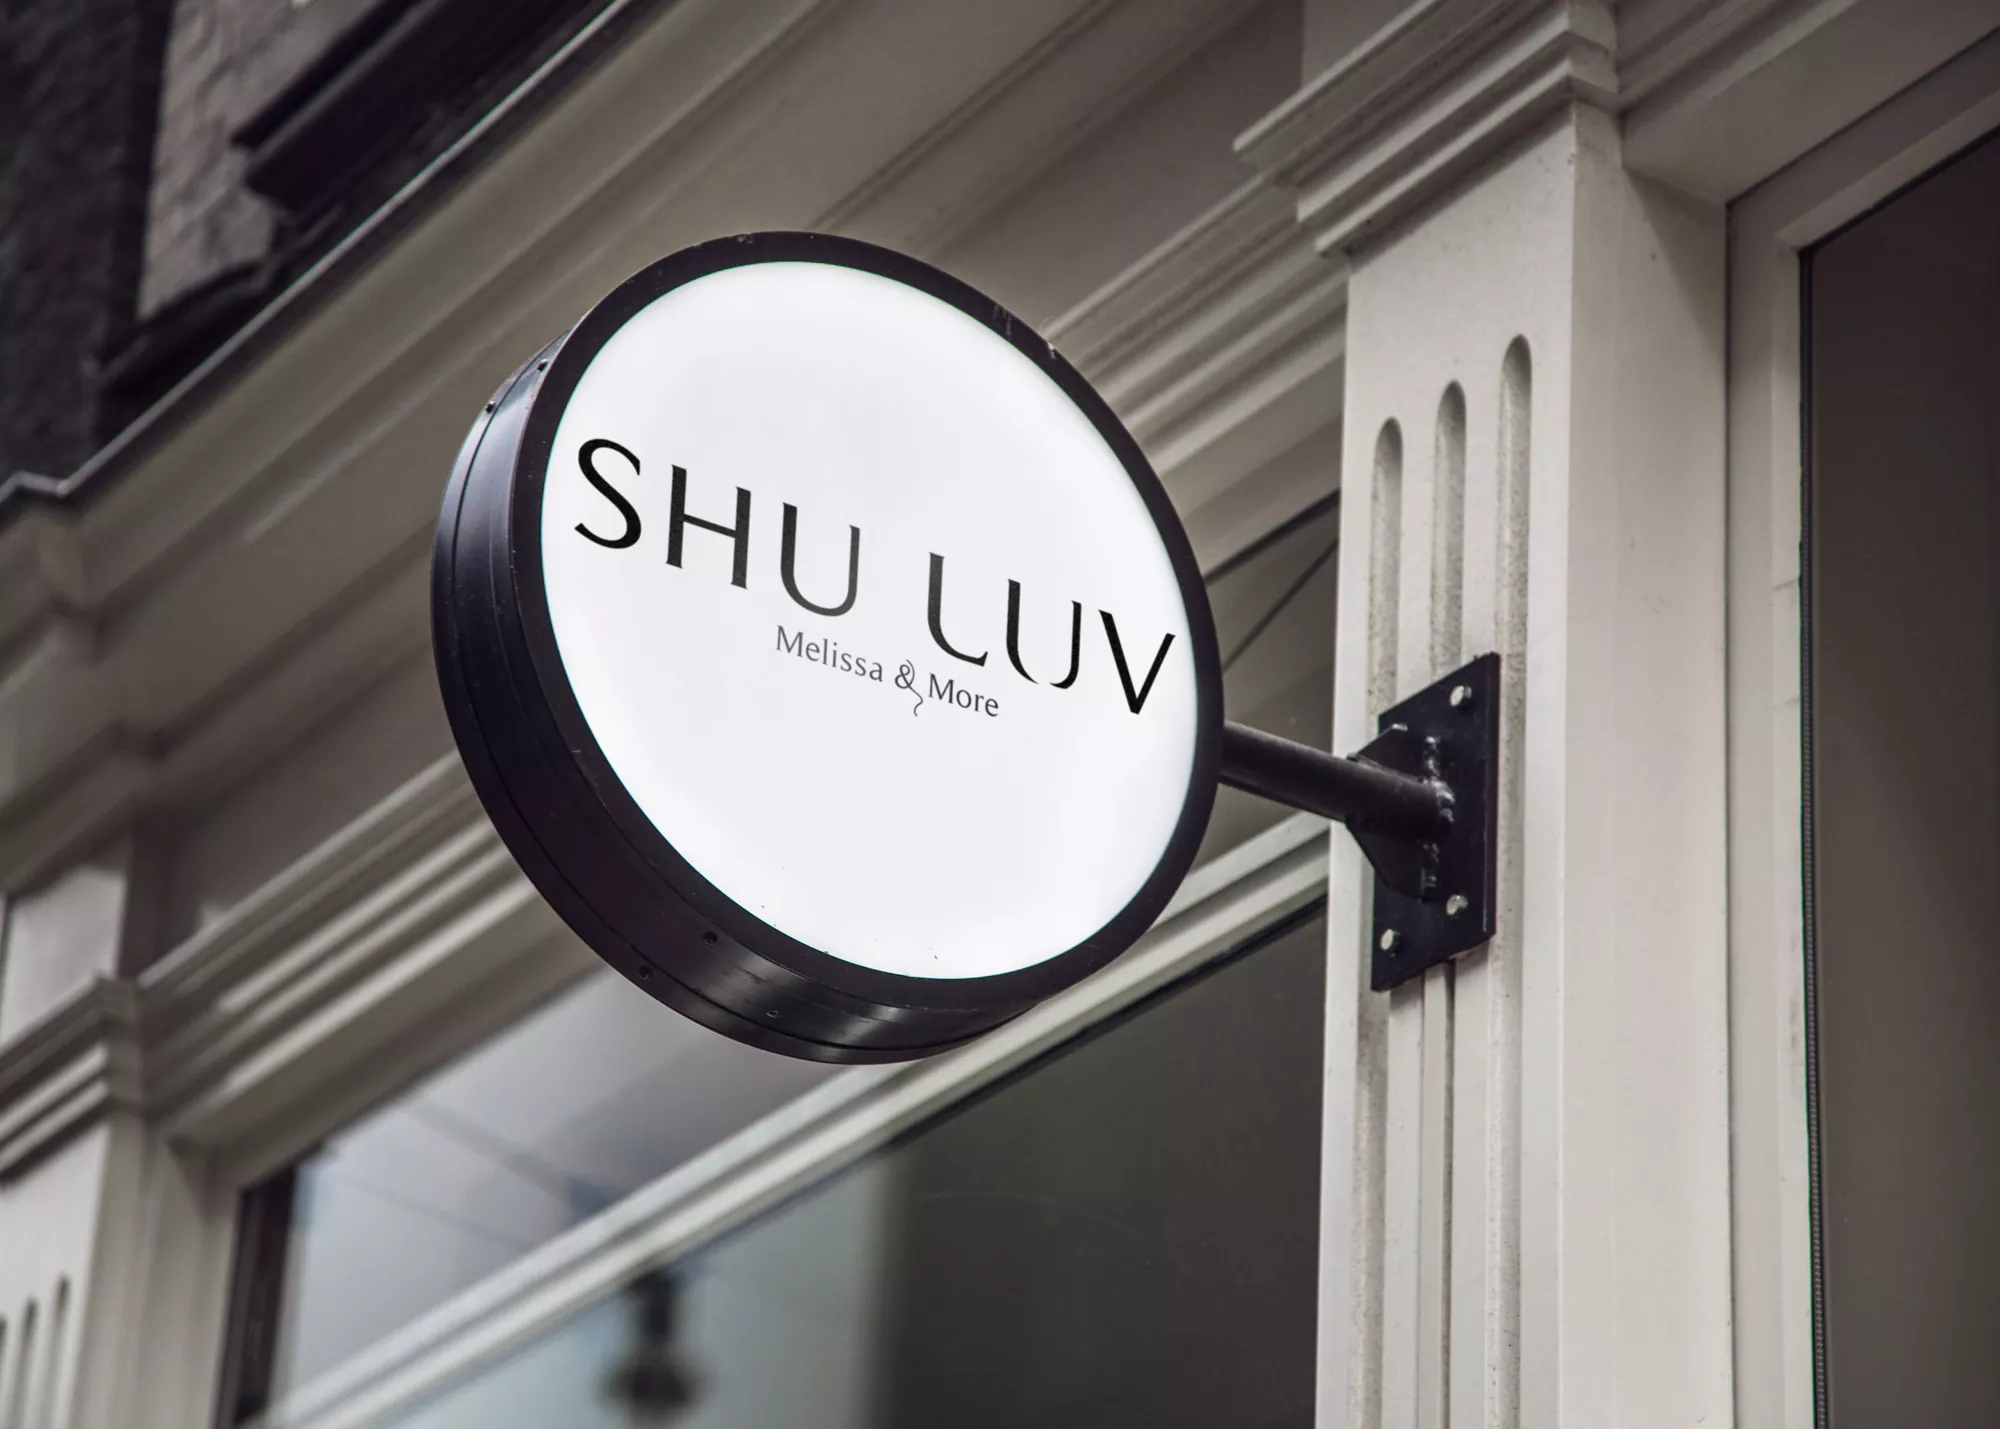 Shuluv: Melissa & More - projekt loga dla marki obuwniczej wizualizacja na szyldzie